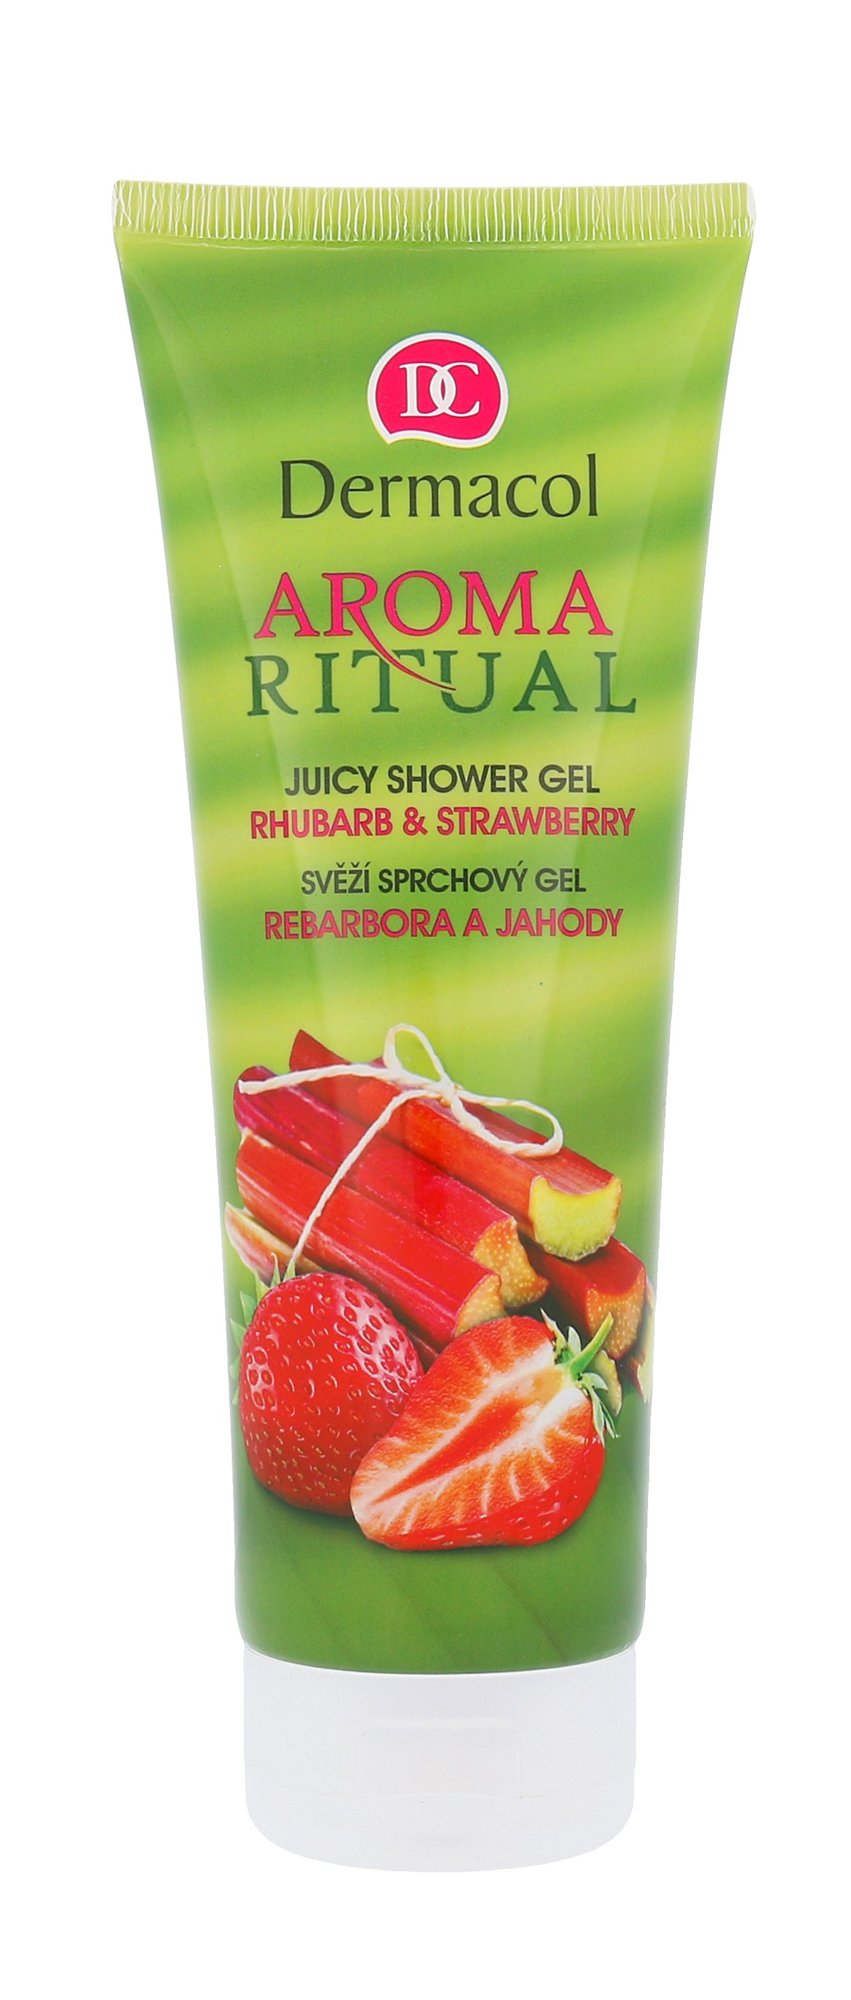 Dermacol Aroma Ritual Rhubarb & Strawberry 250ml dušo želė